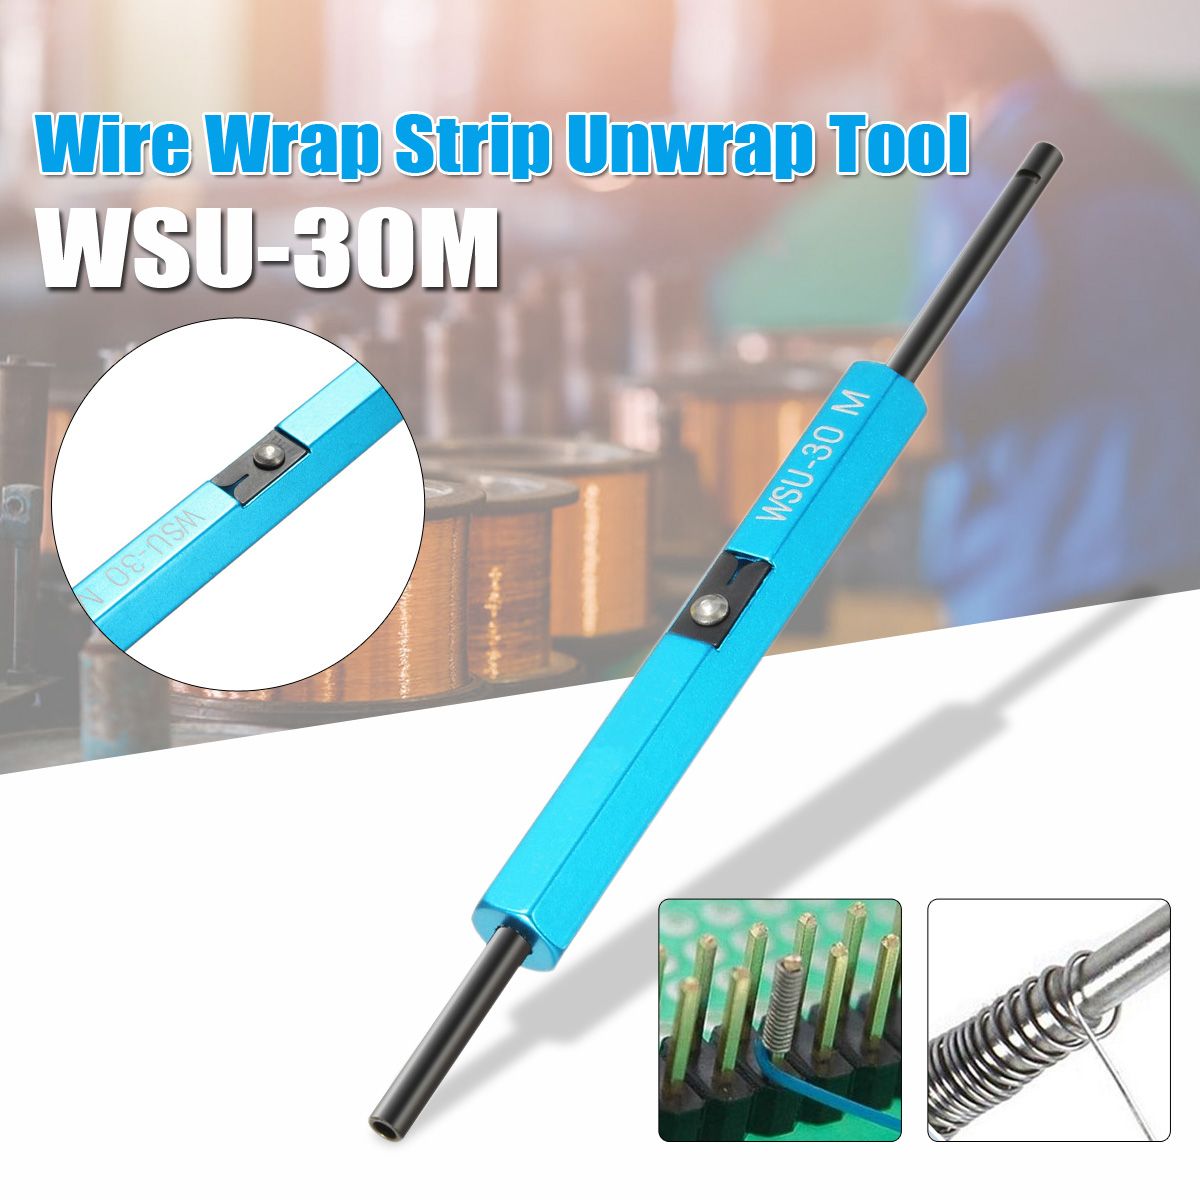 New Durable Wire Wrap Hand Tools Wsu-30m Wire Wrap Strip Unwrap